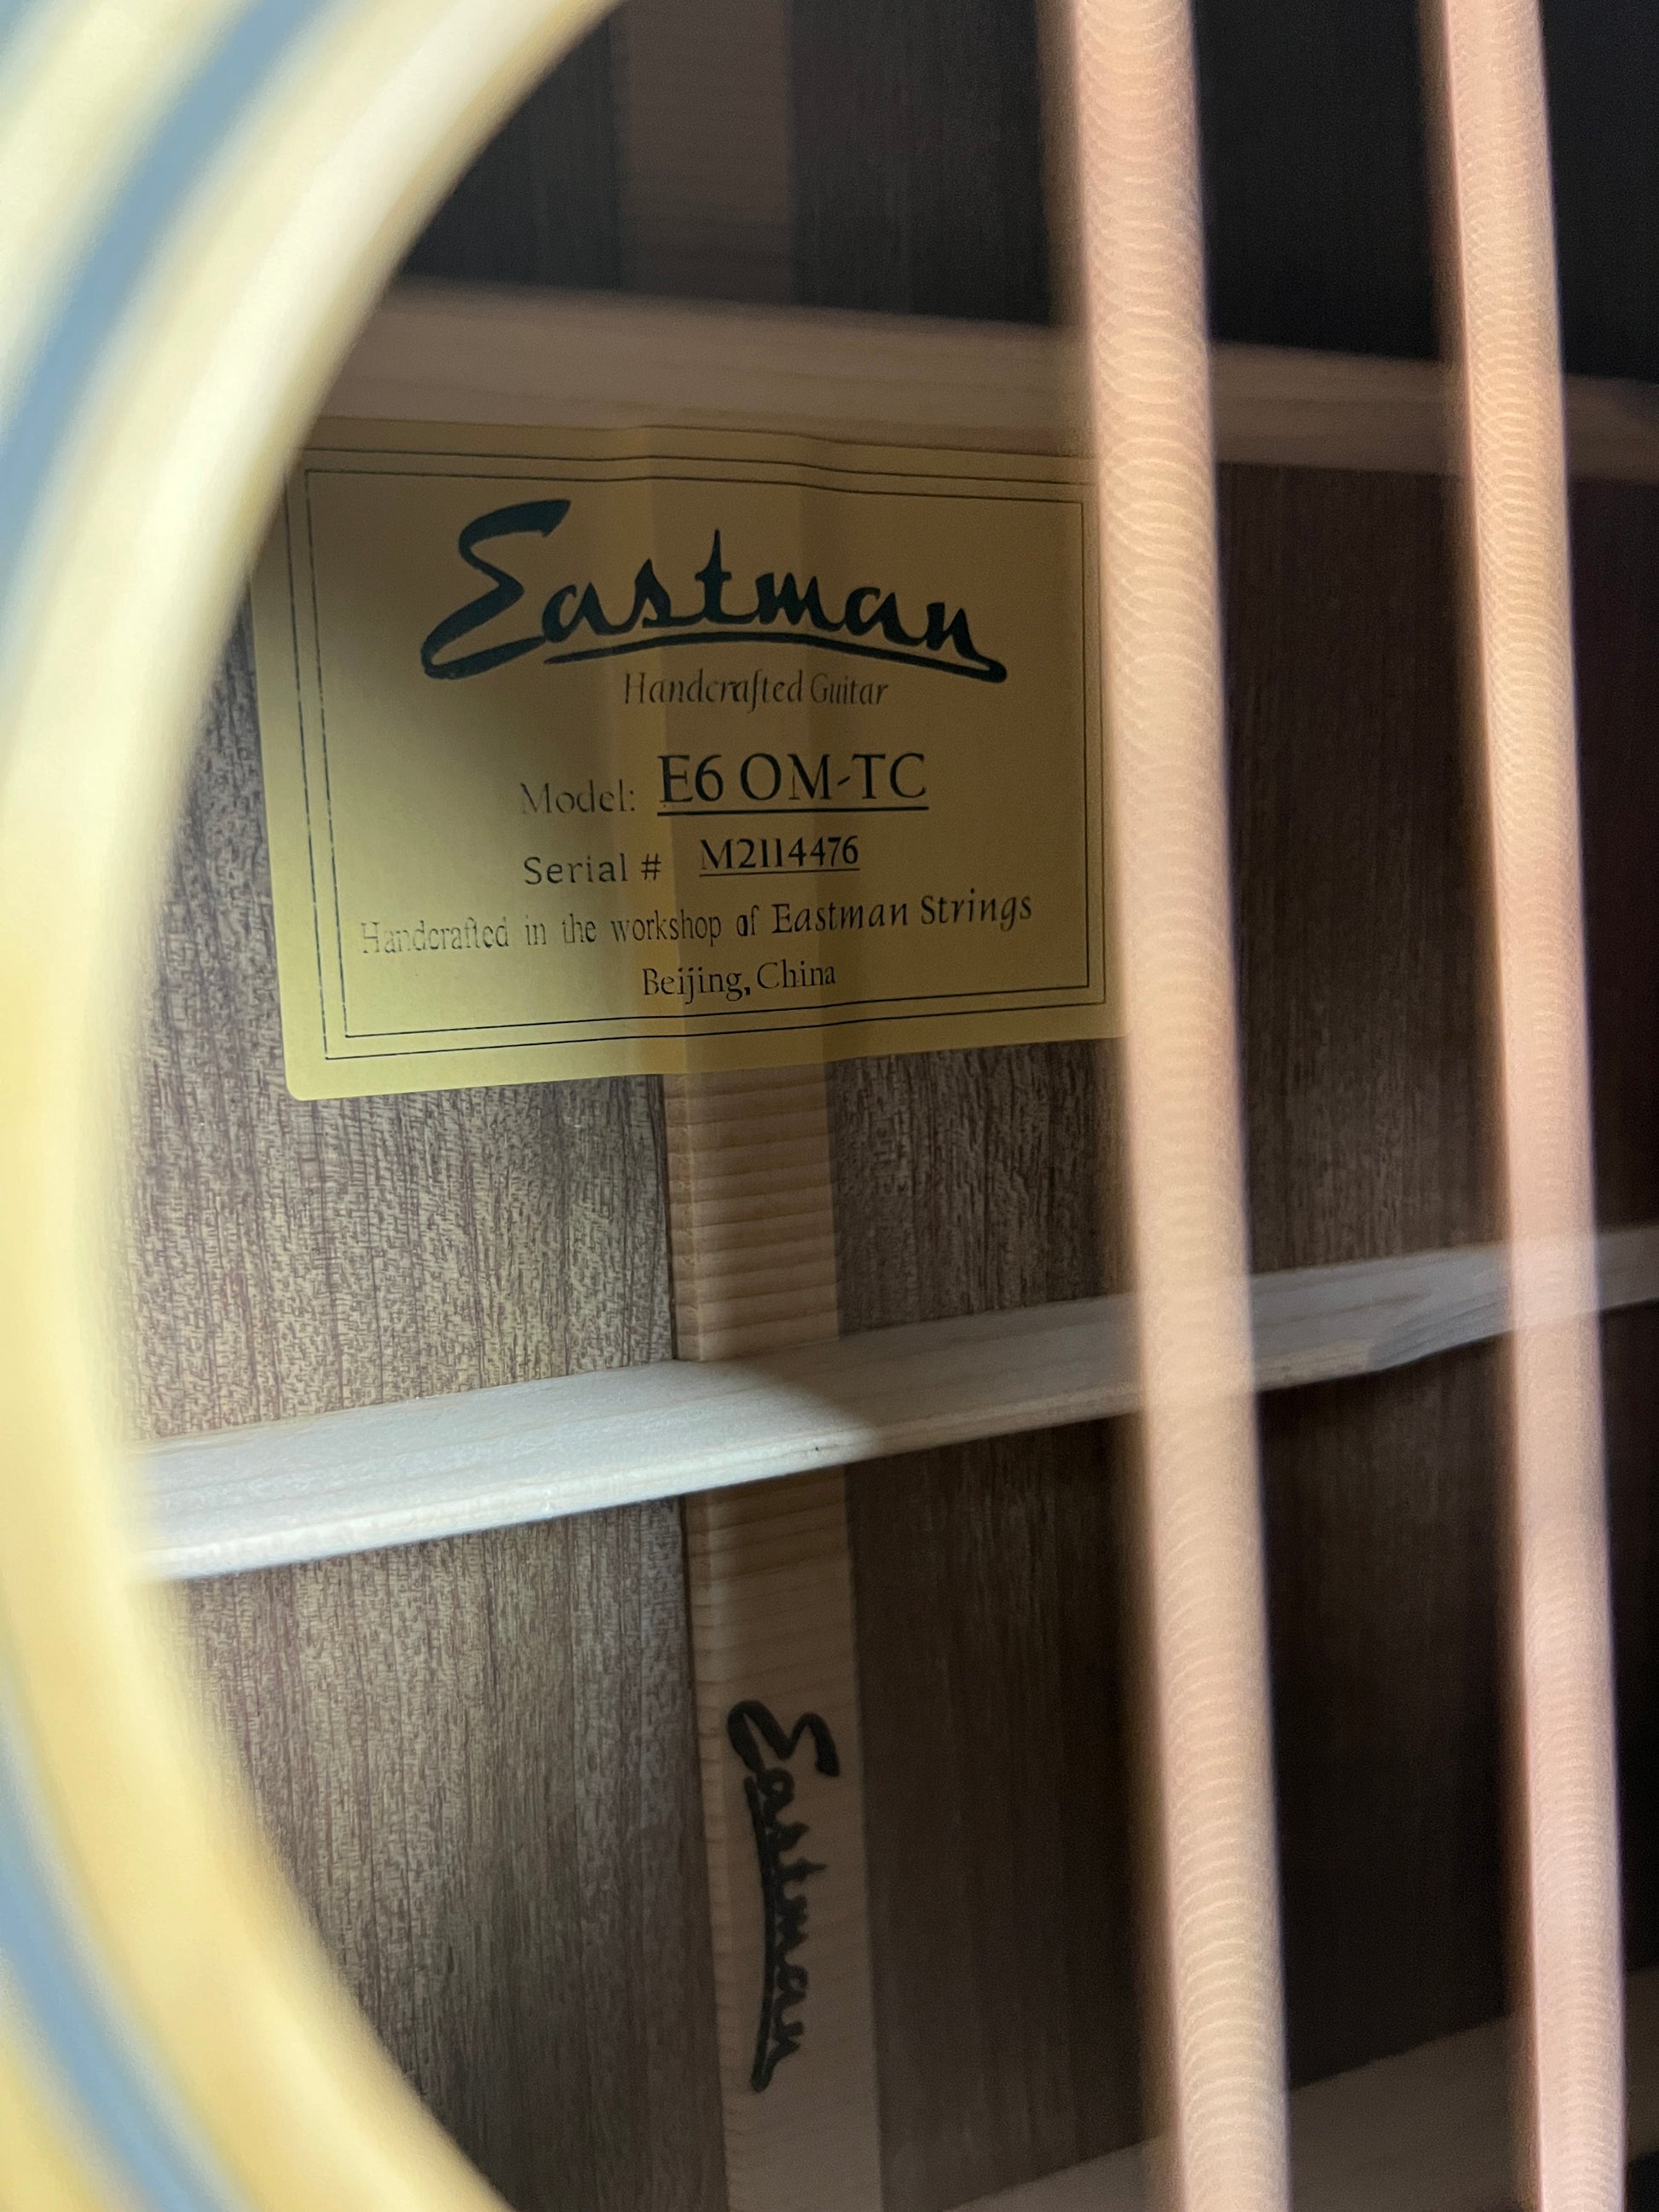 Eastman E6OM-TC label